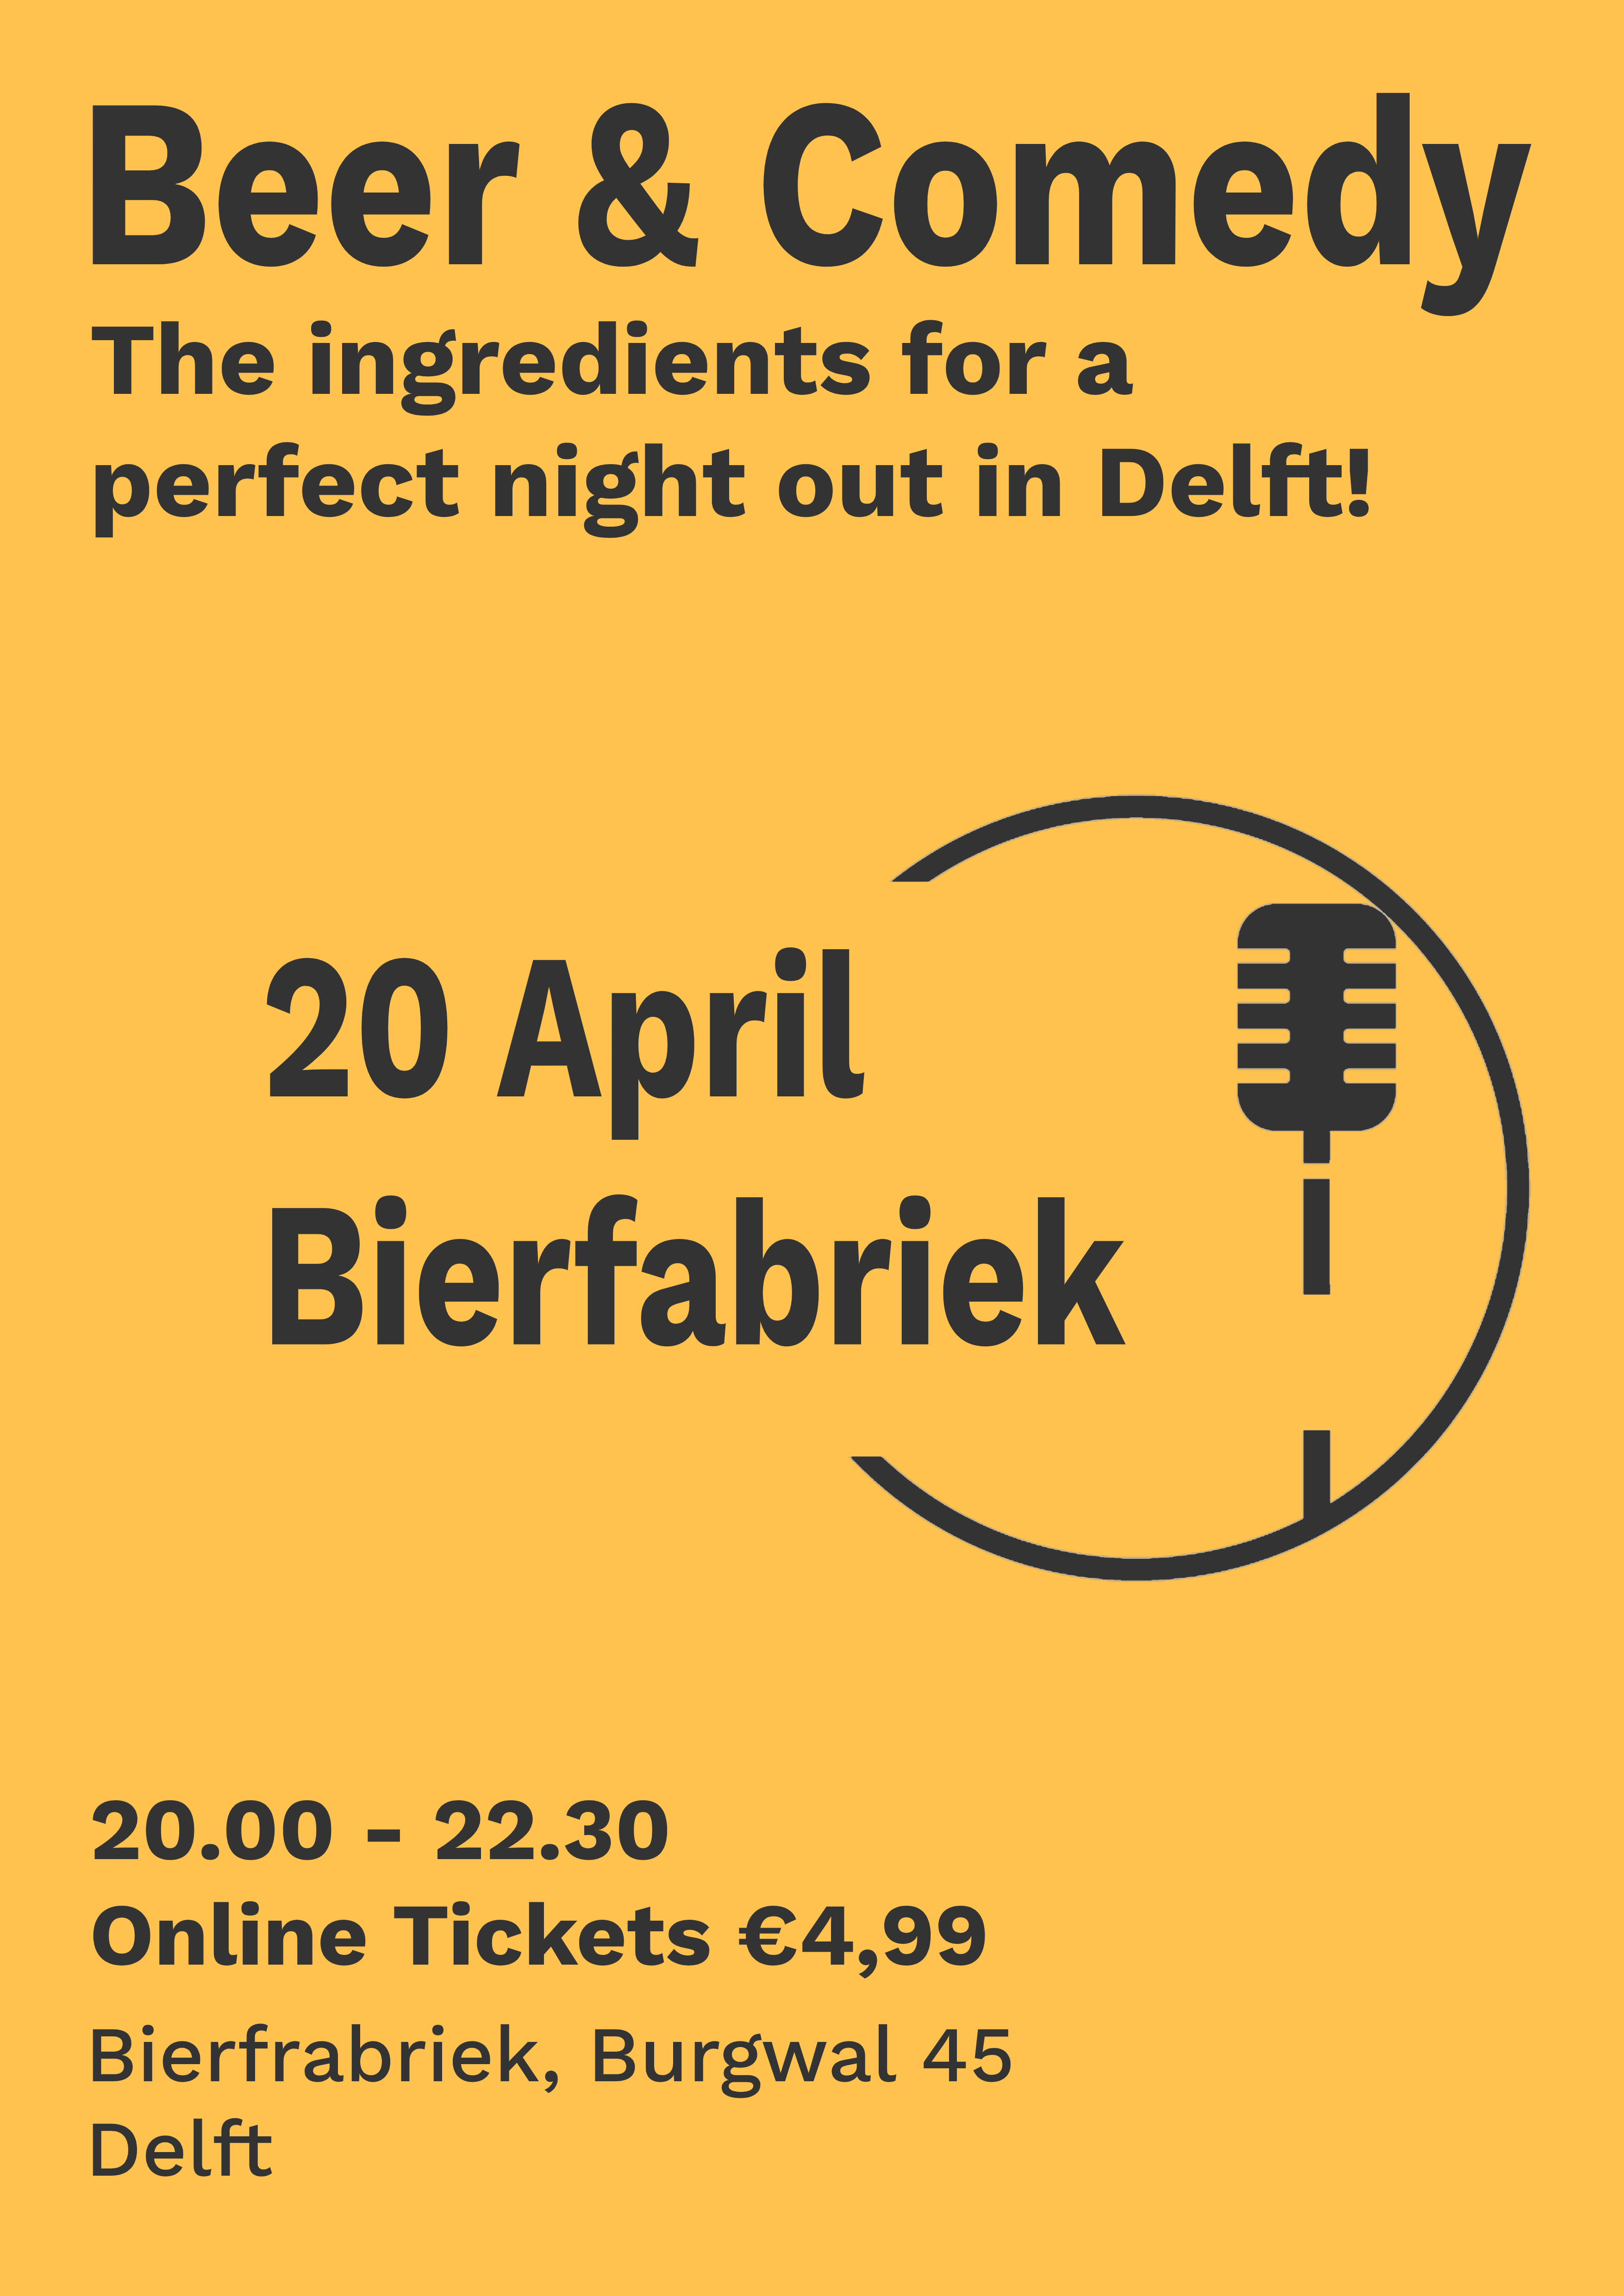 Ticket kopen voor evenement Beer & Comedy Delft